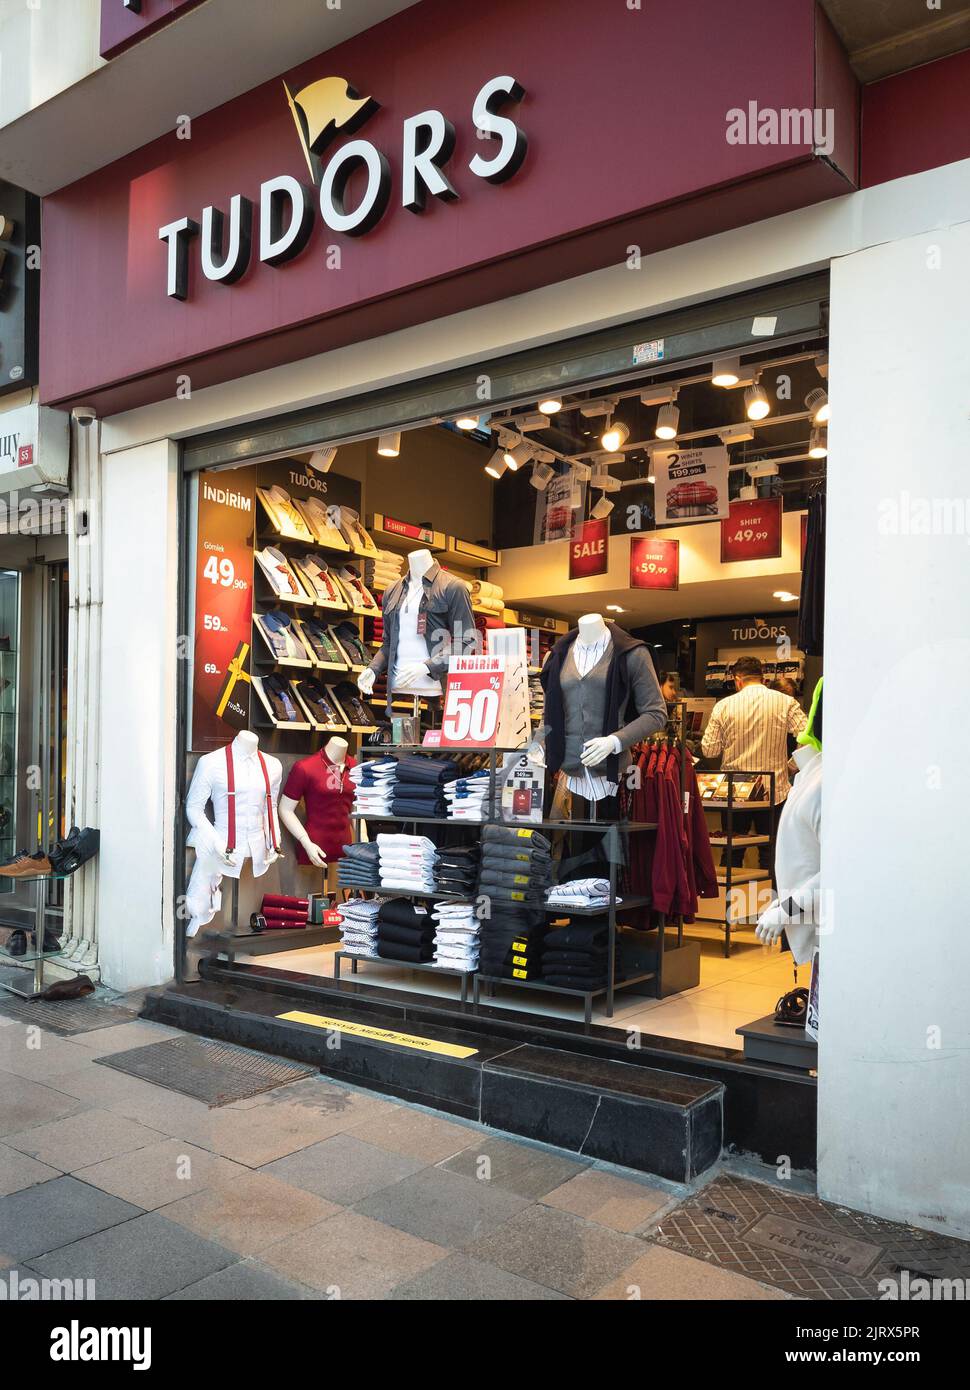 Taksim, Istanbul - 24 mars 2022 : portrait vue rapprochée du magasin Tudors dans la rue Istiklal. Tudors est une chaîne de magasins basée à Istanbul. Banque D'Images